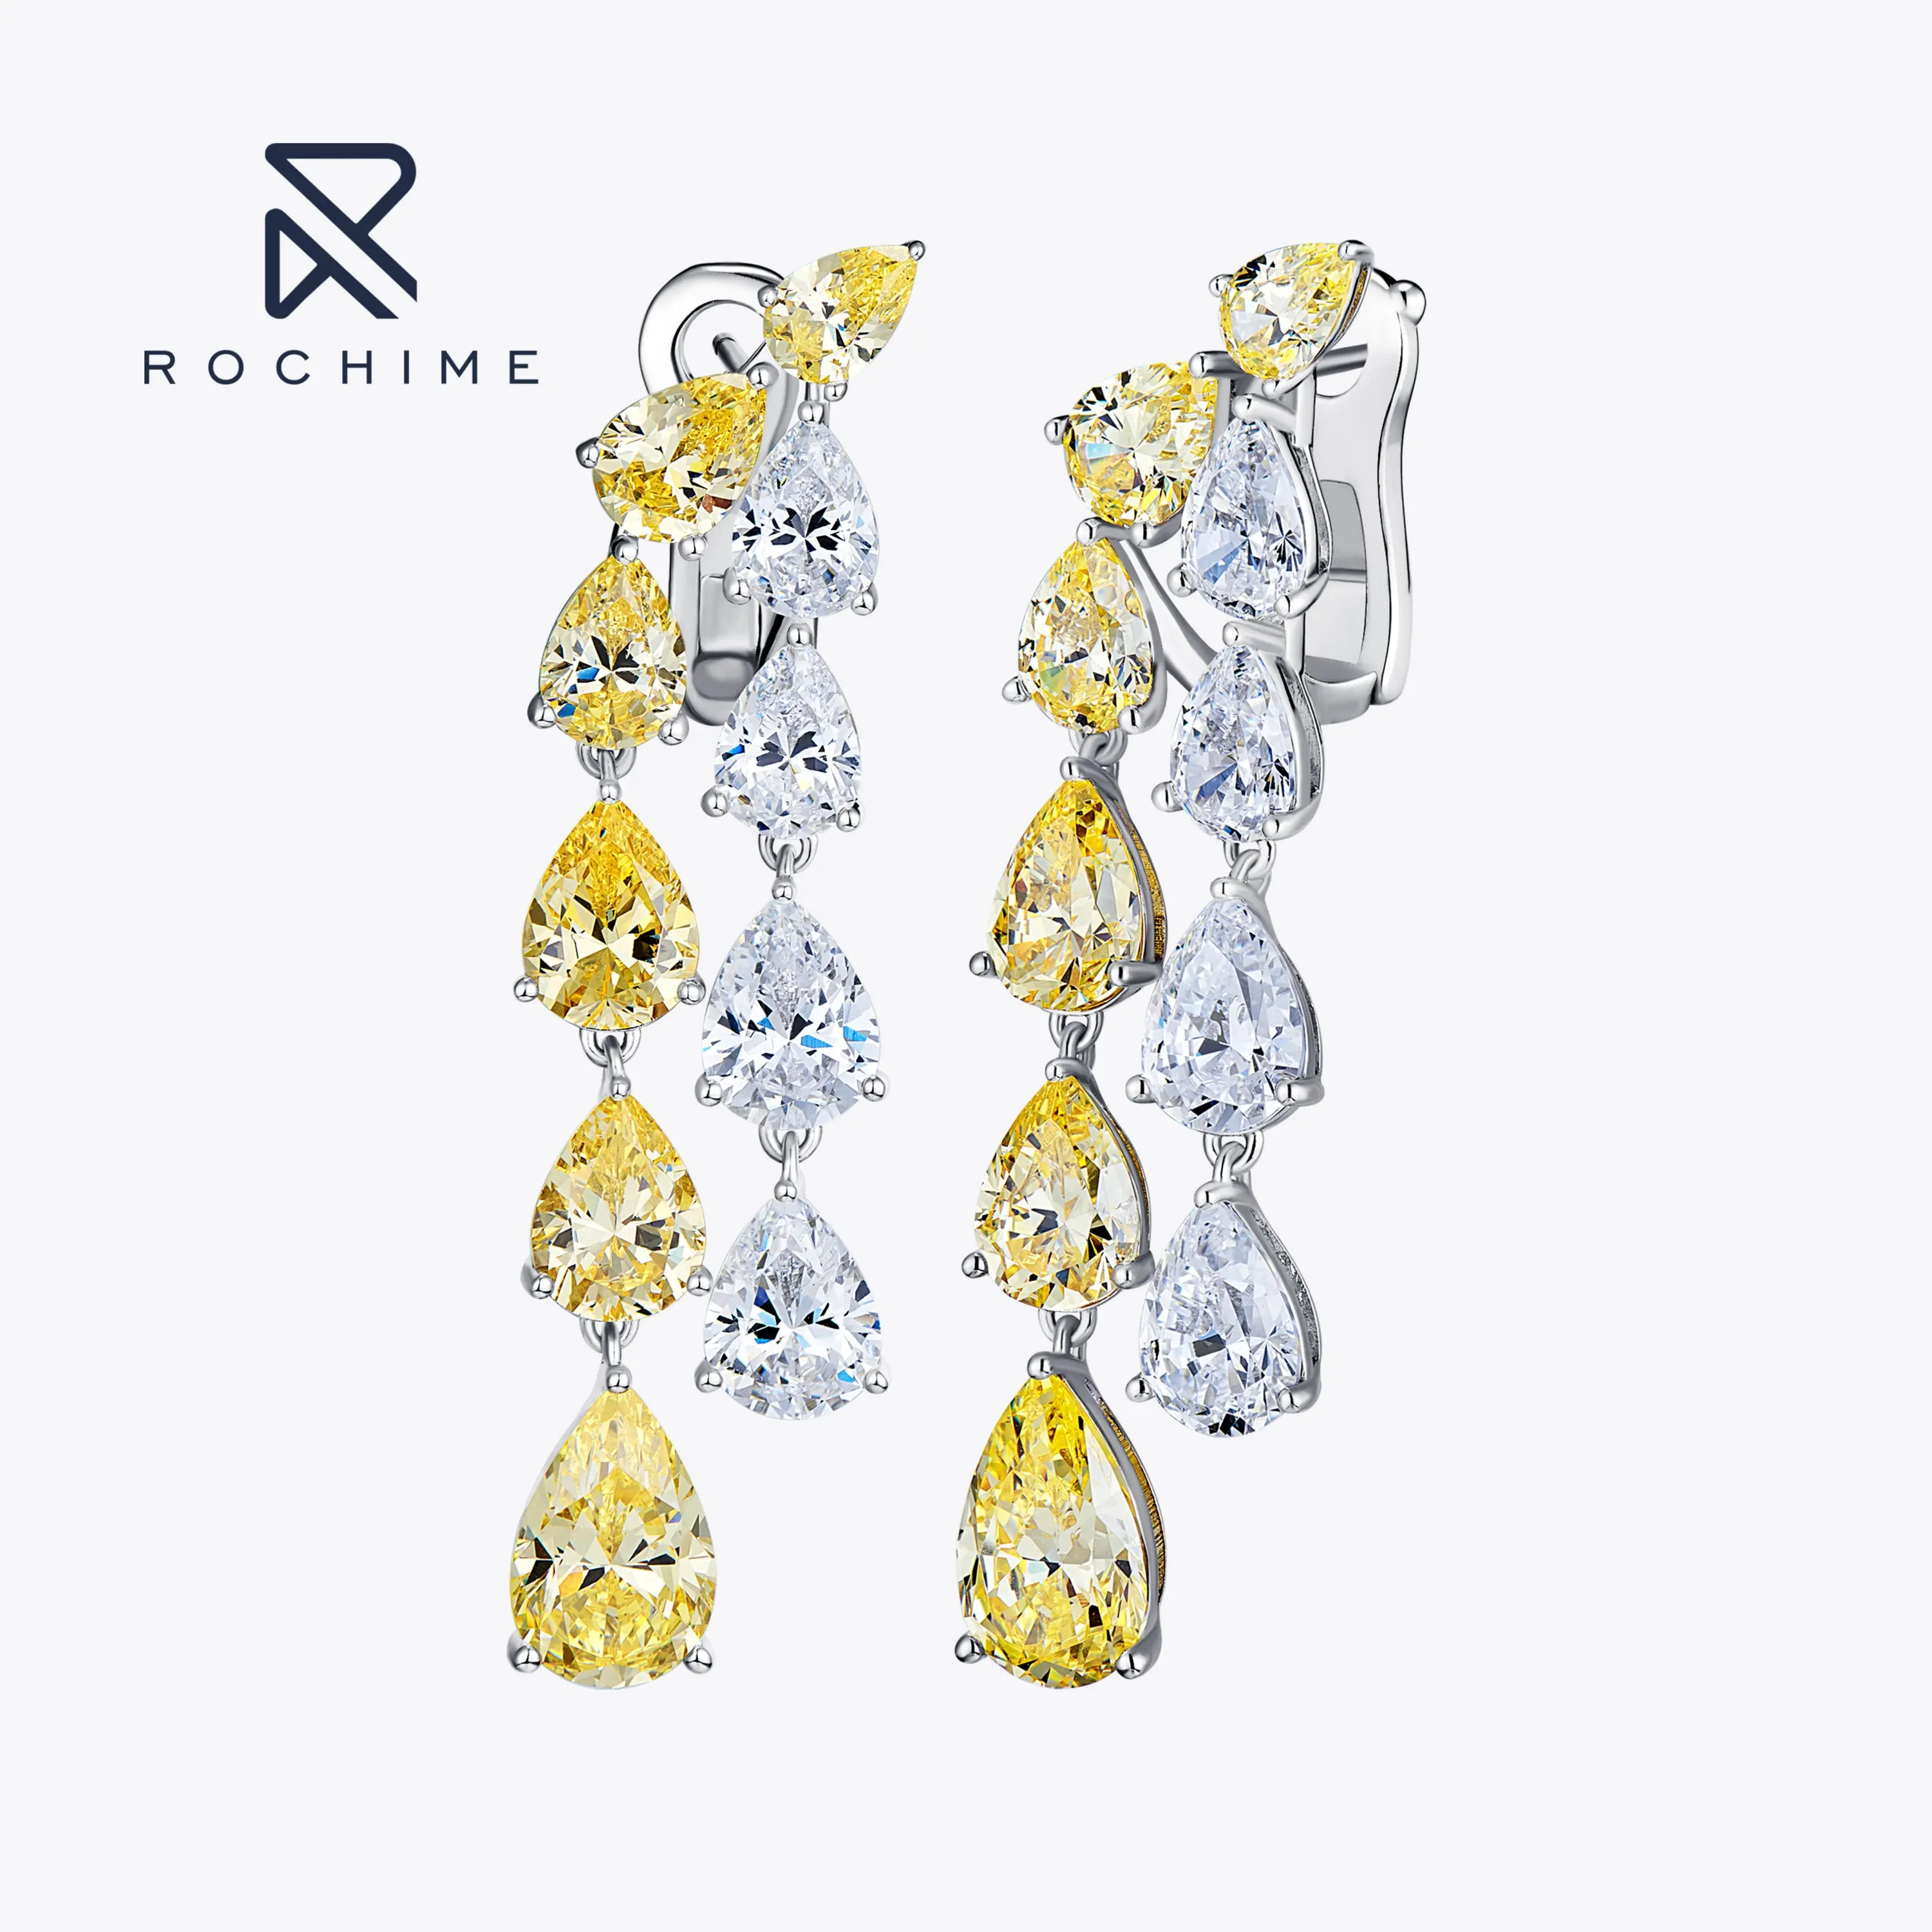 Rochime luxury sparkling yellow diamond earrings925 sterling silver gold plated zircon fine jewelry for women